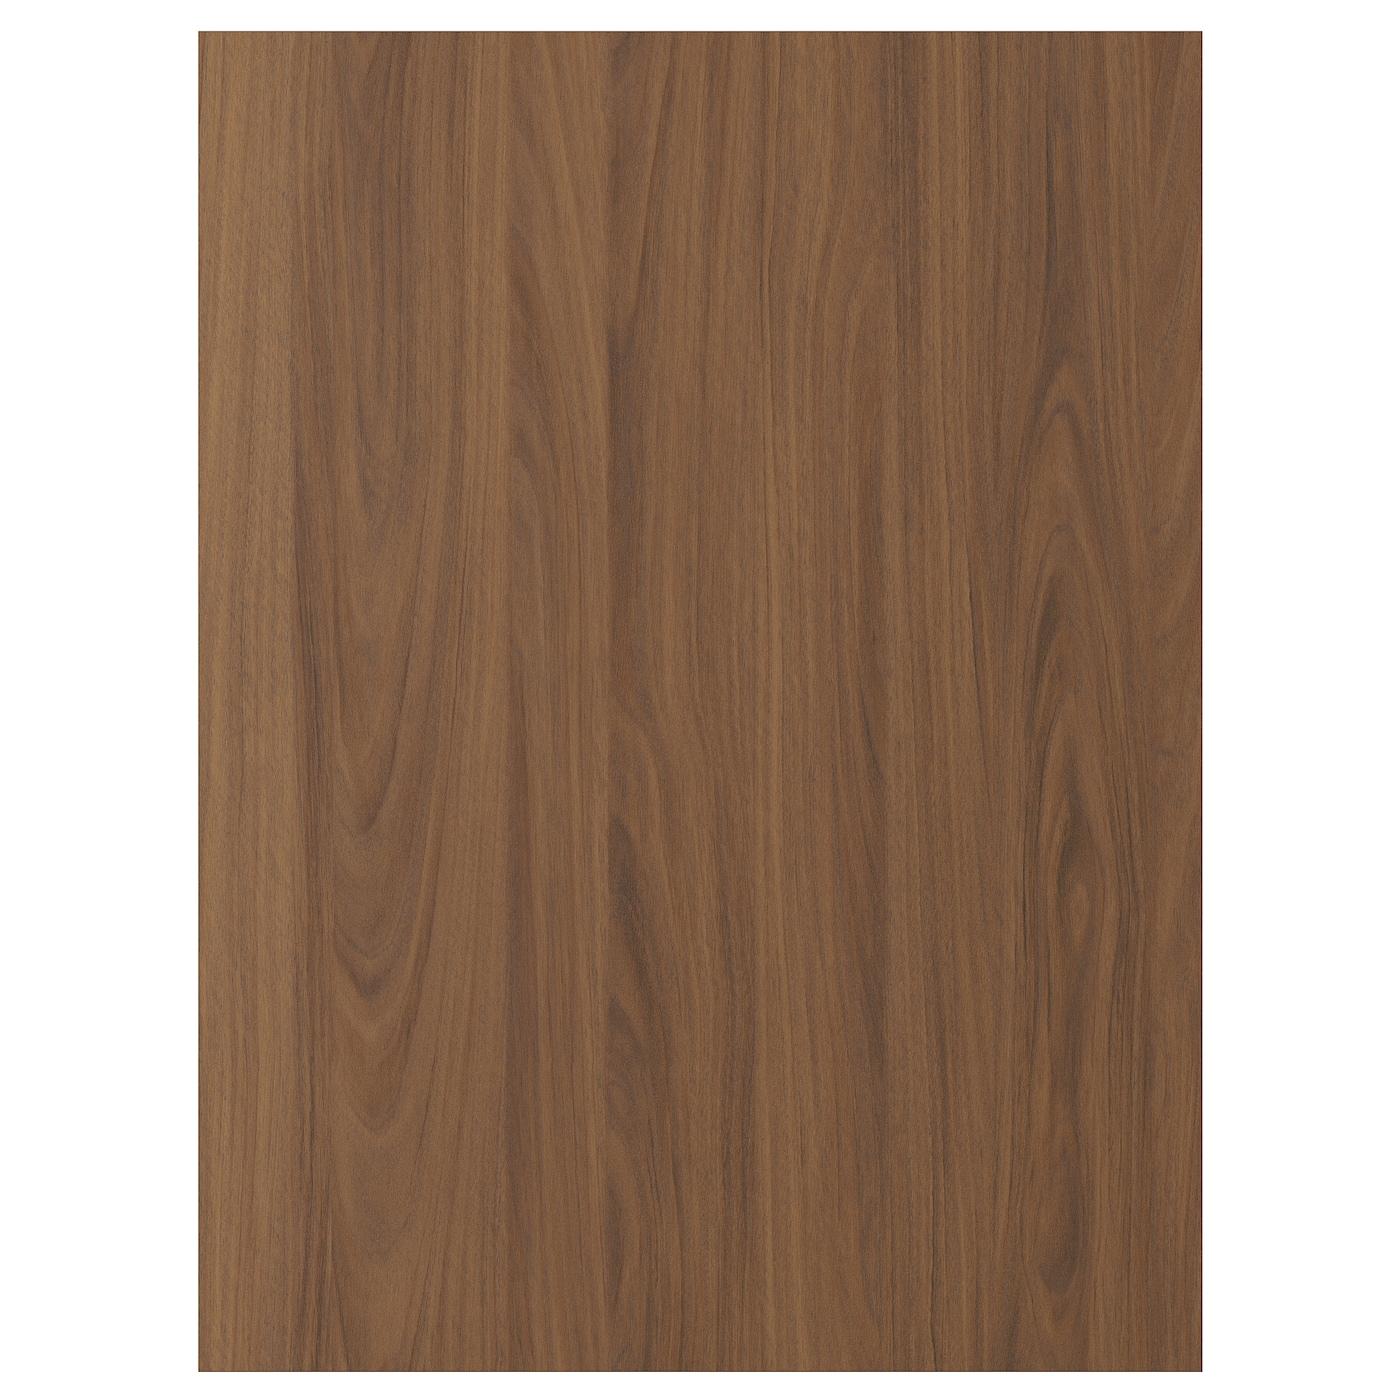 Дверца  - TISTORP IKEA/ ТИСТОРП ИКЕА,  80х60 см, коричневый